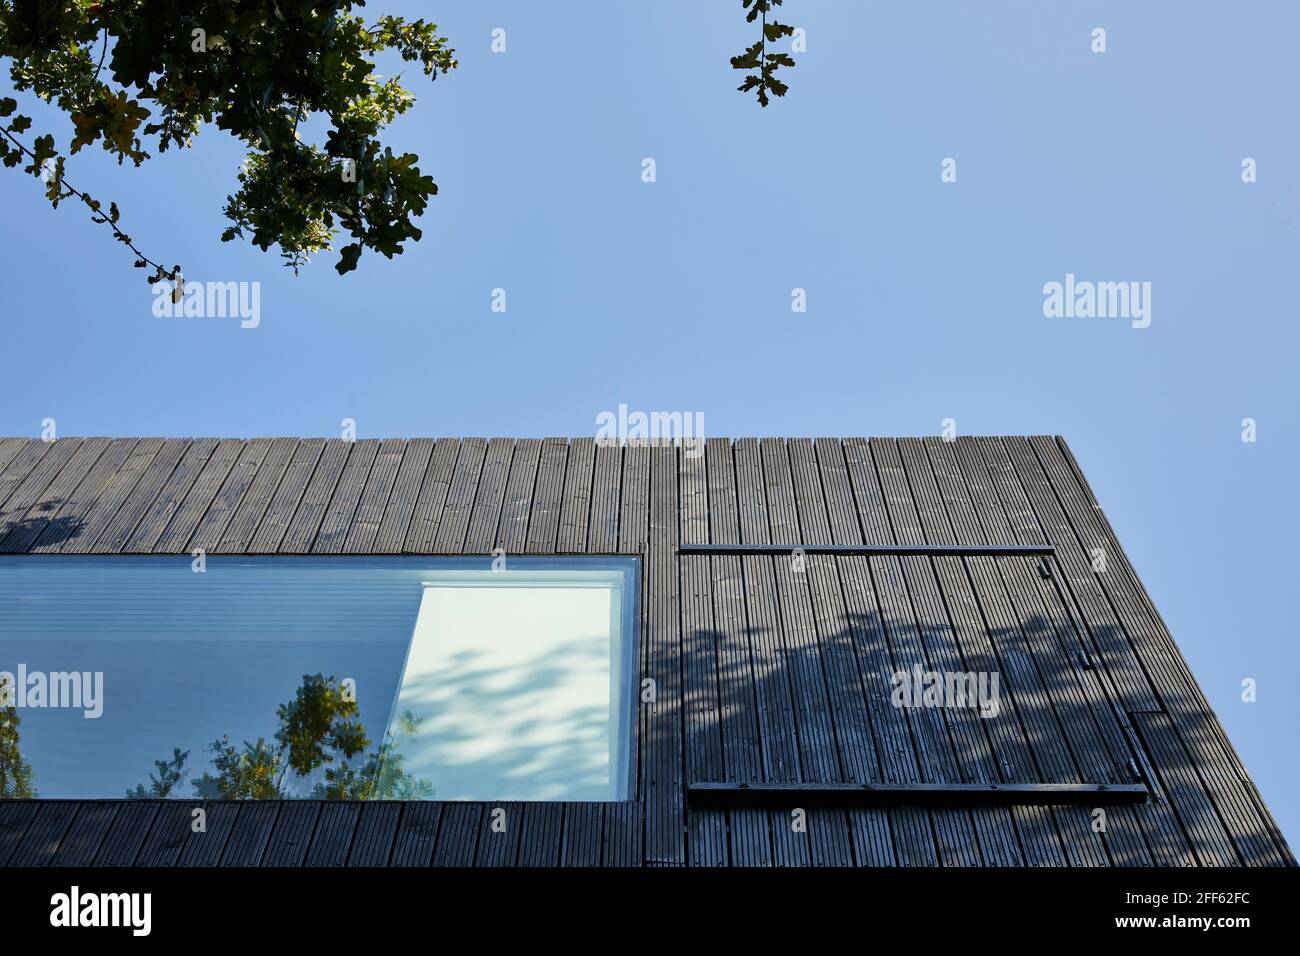 Extérieur de la maison. Ed's Shed 2020, Londres, Royaume-Uni. Architecte: Adjaye Associates , 2007. Banque D'Images